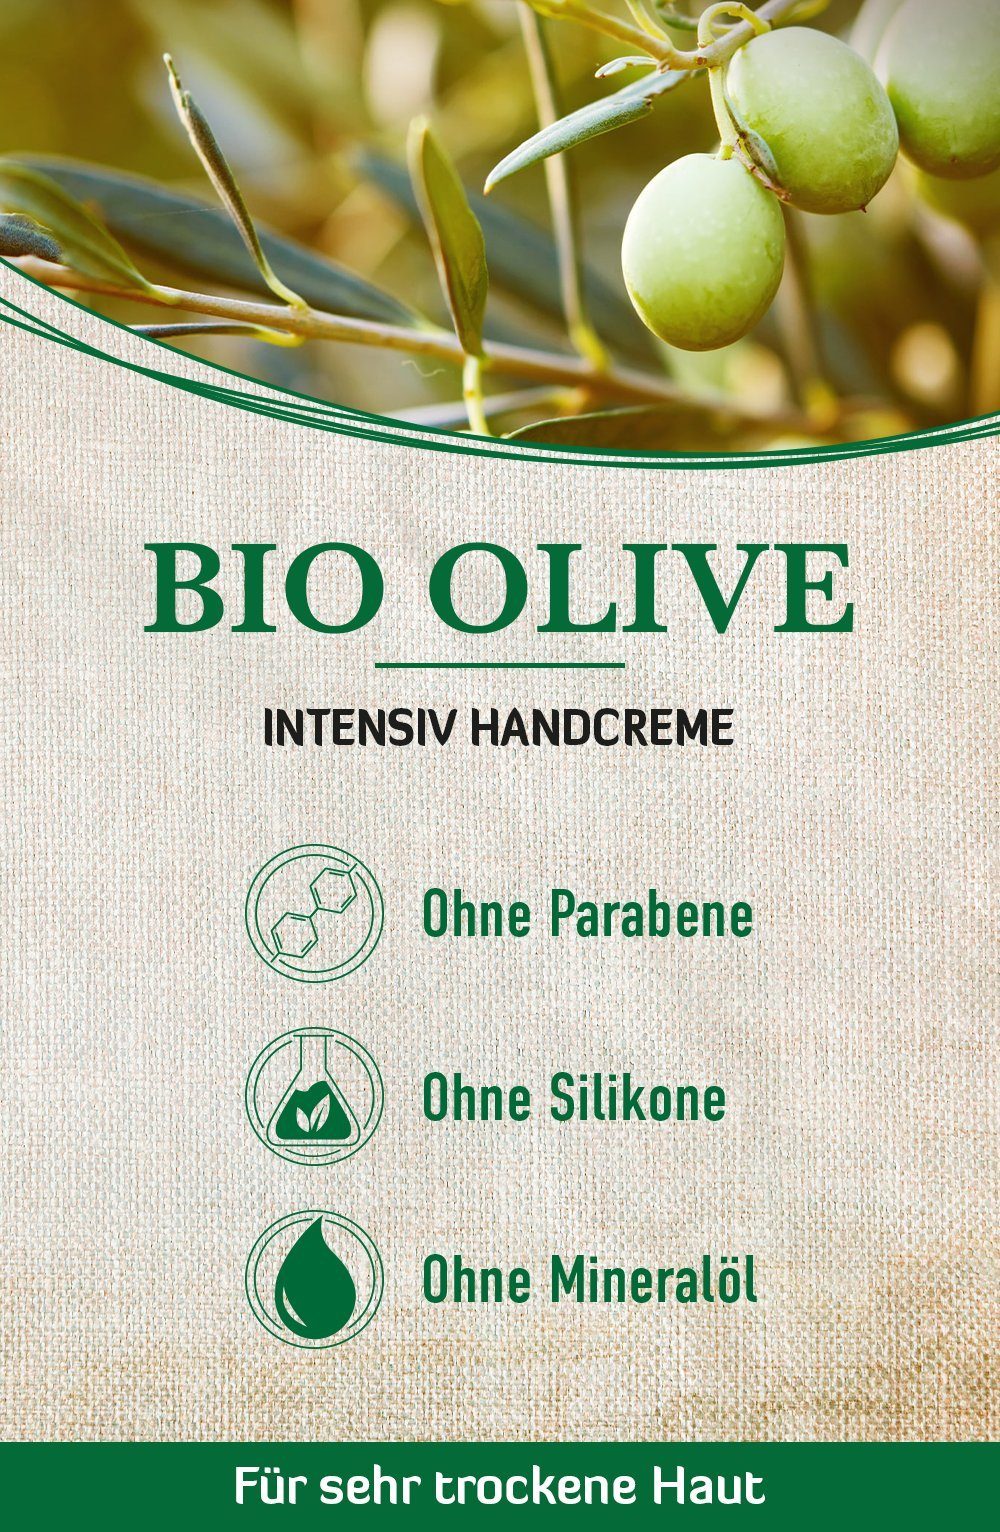 Damen Maniküre & Pediküre alkmene Handcreme Handcreme mit Bio Olive - Intensiv Creme für sehr trockene Hände - vegane Olivenöl I